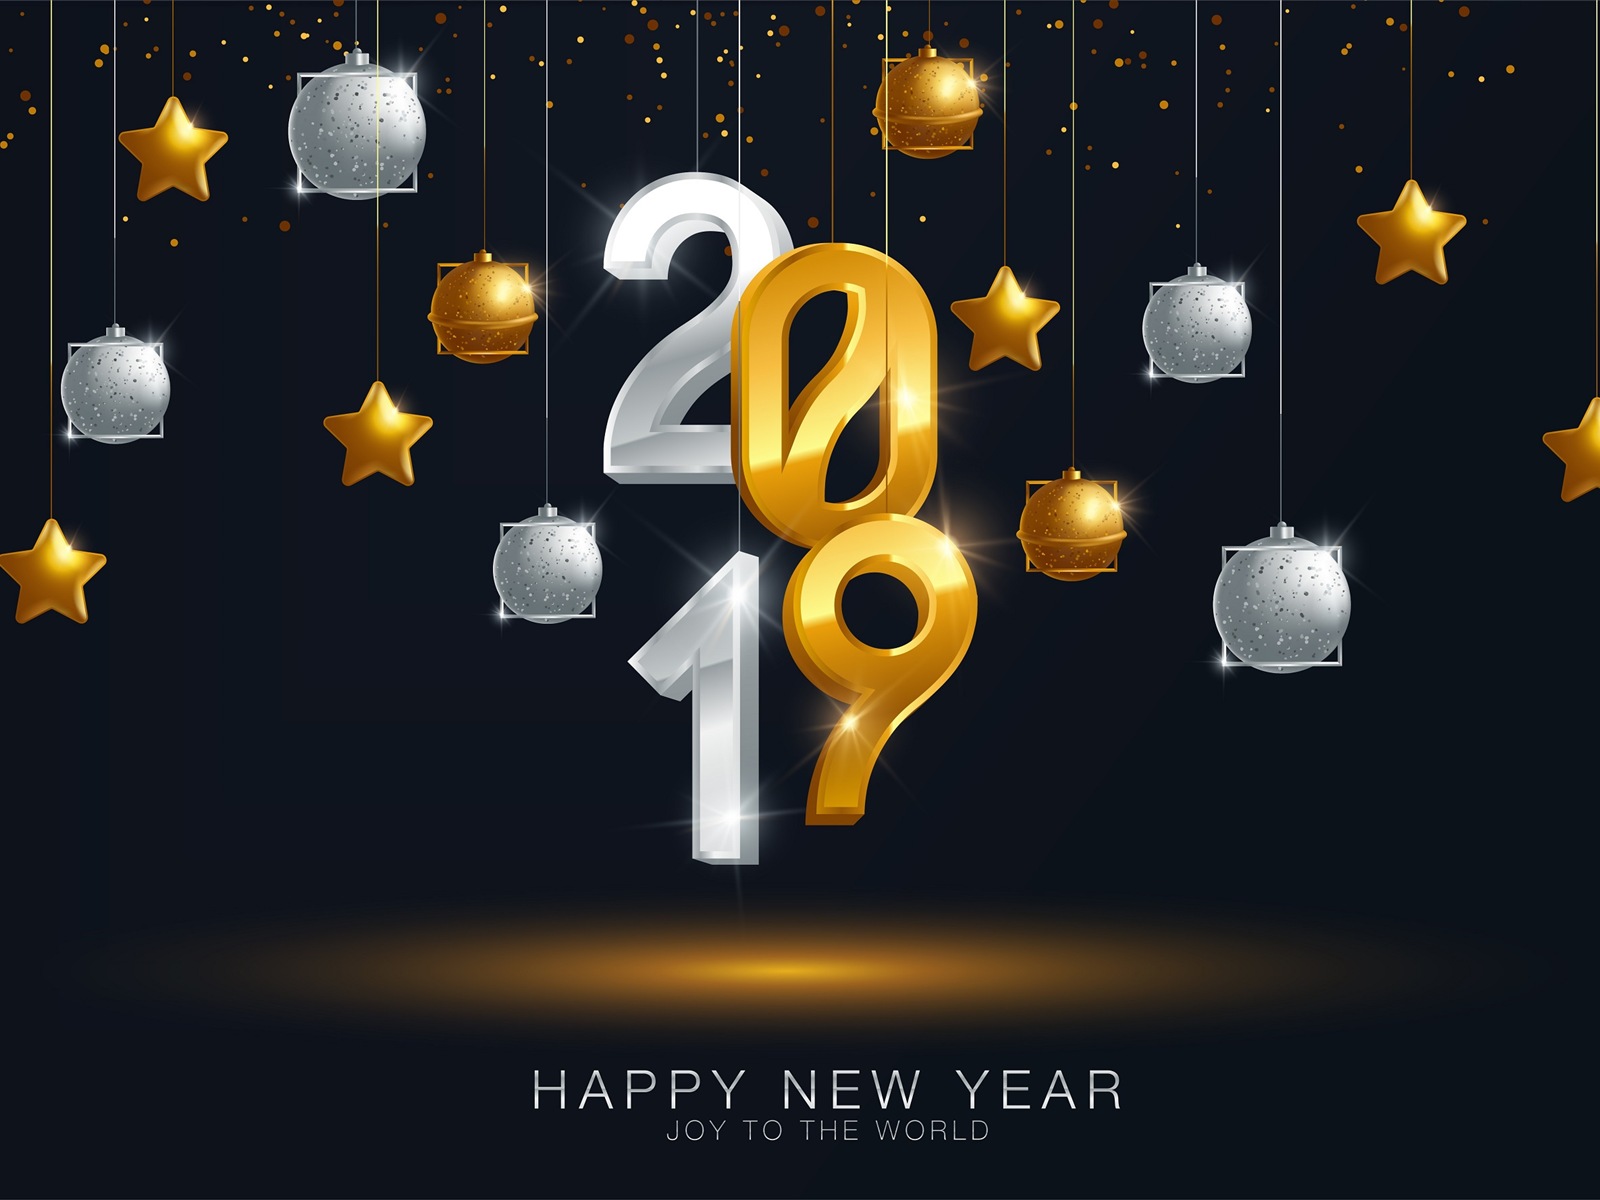 Feliz año nuevo 2019 HD wallpapers #12 - 1600x1200